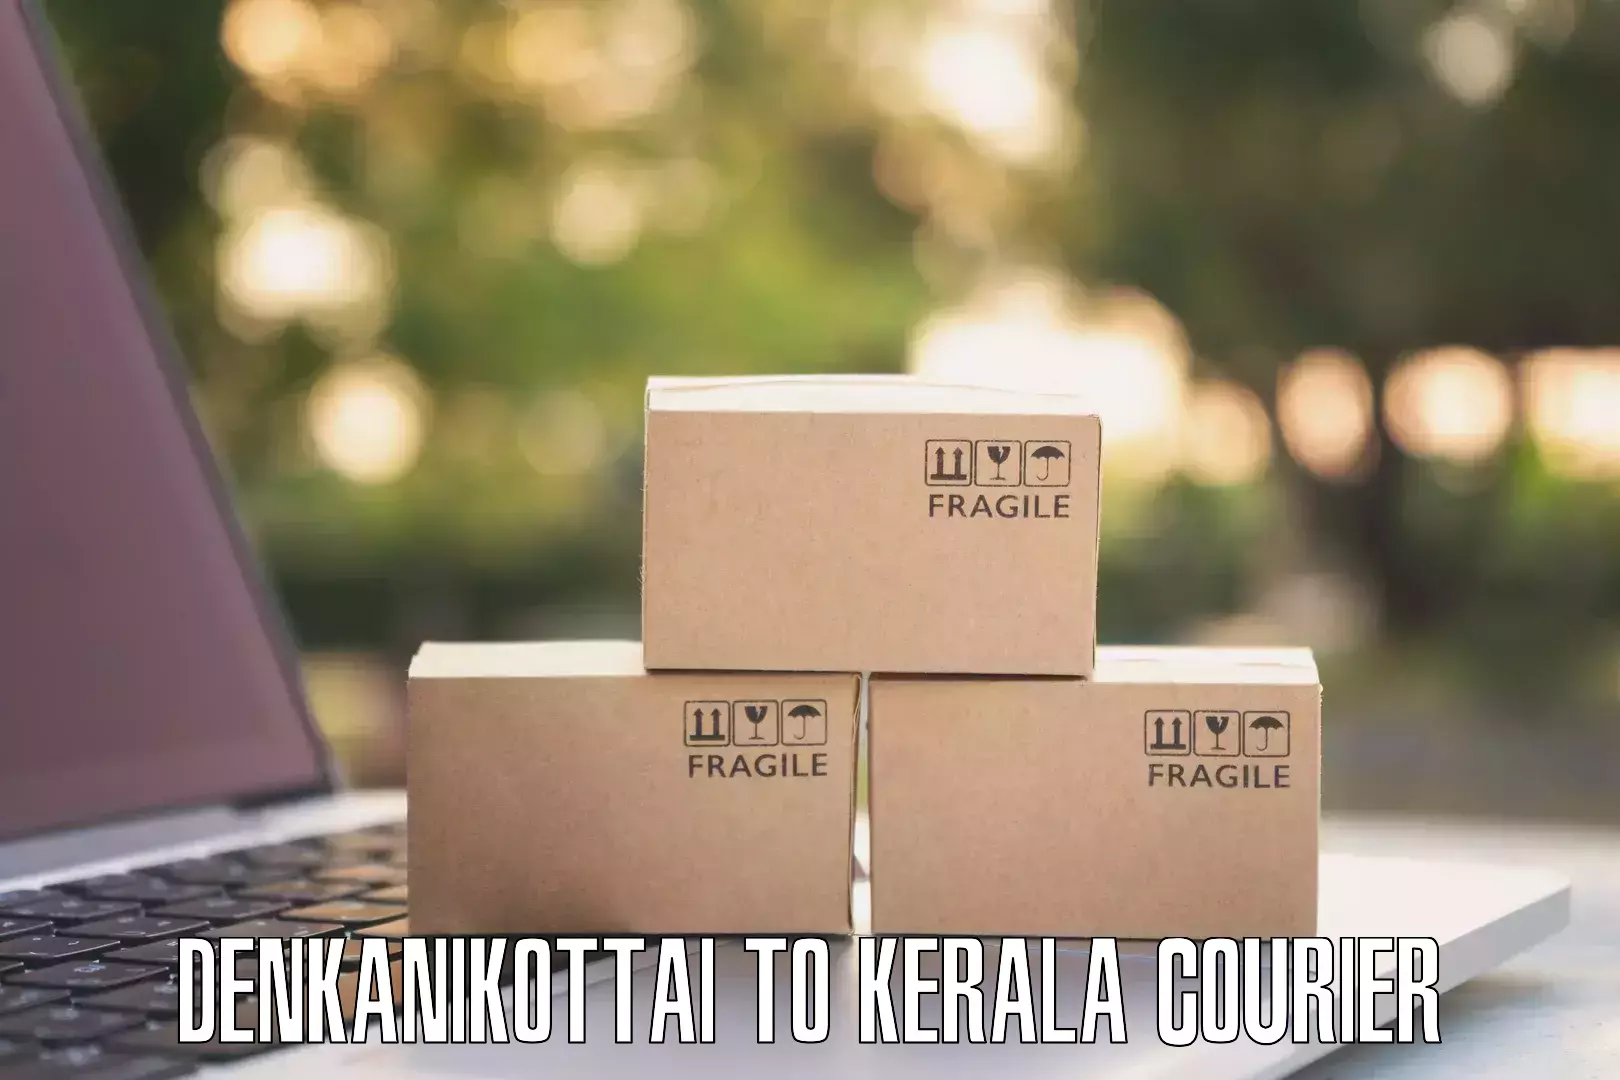 Personalized courier solutions Denkanikottai to Kakkayam